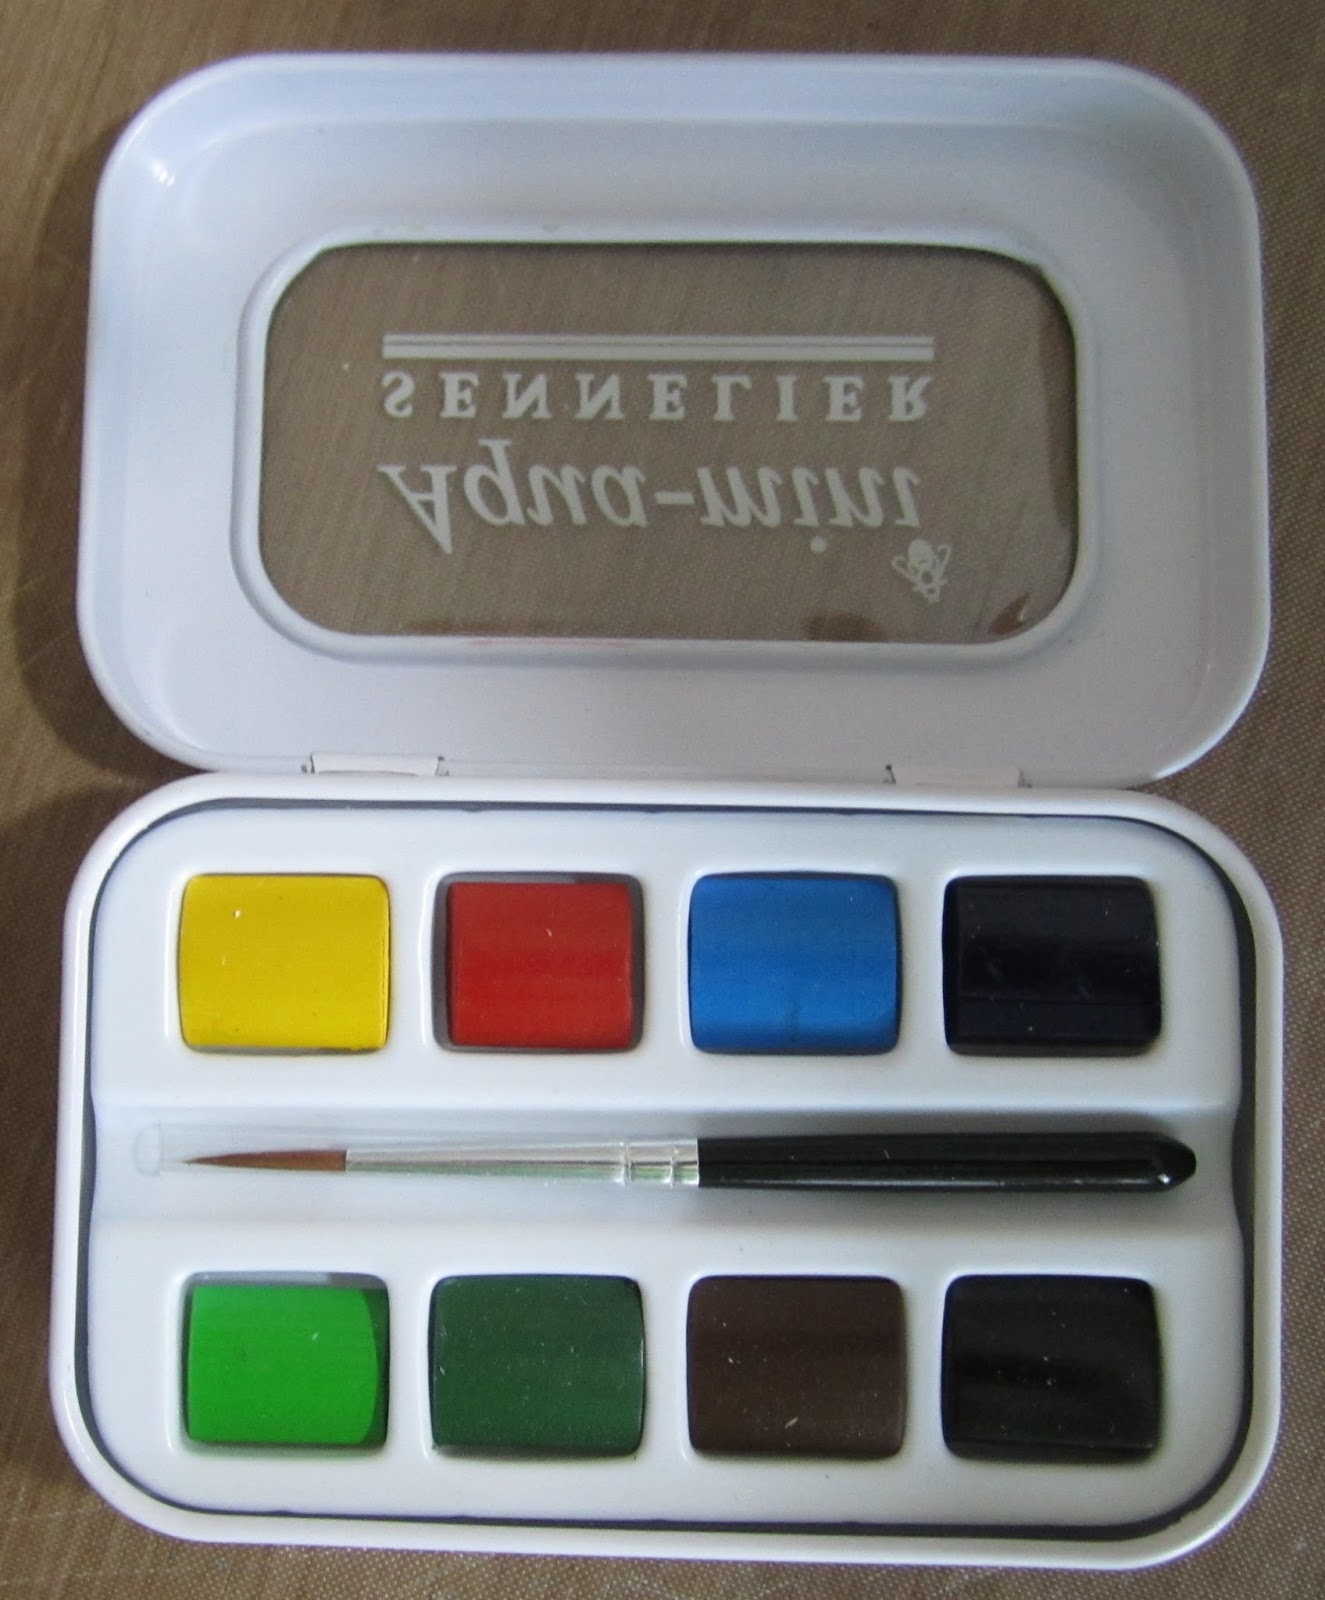 Review - Sennelier Aqua Mini Watercolor Set #Sennelier #Watercolor